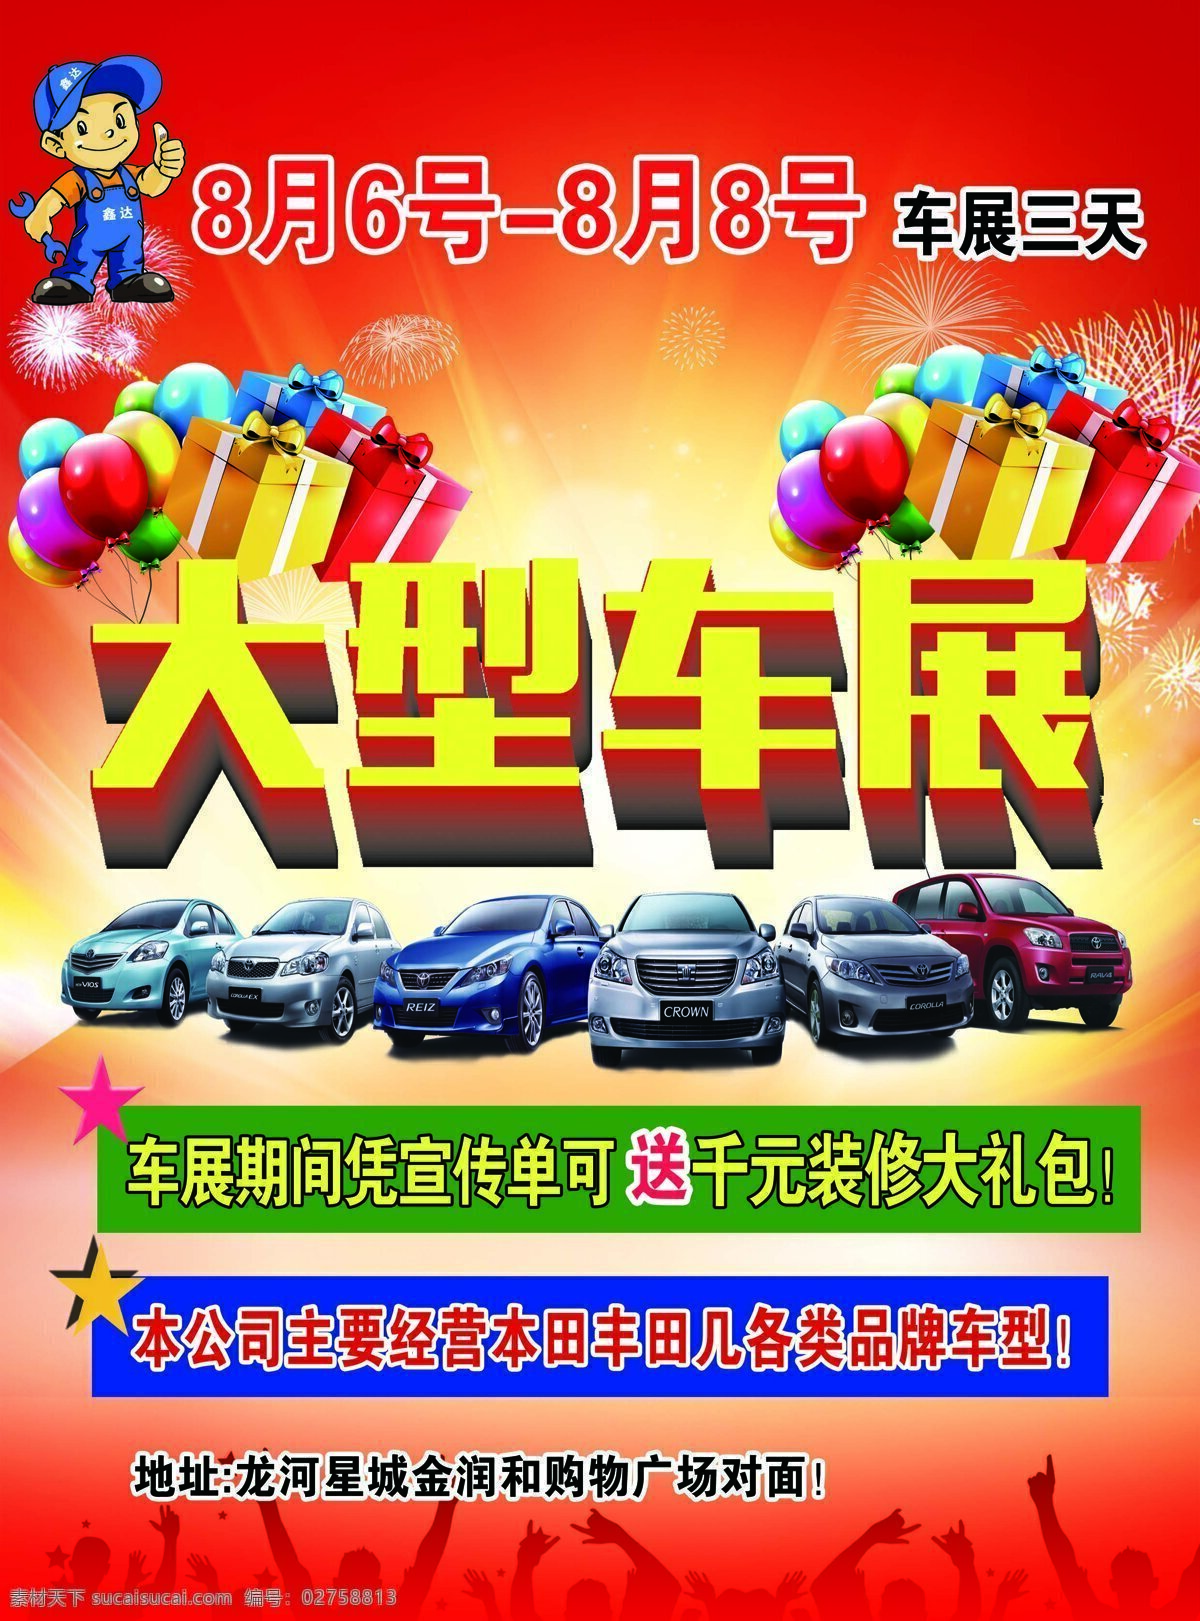 红色 背景 车展 宣传海报 模板下载 礼物 盒 特惠丰田